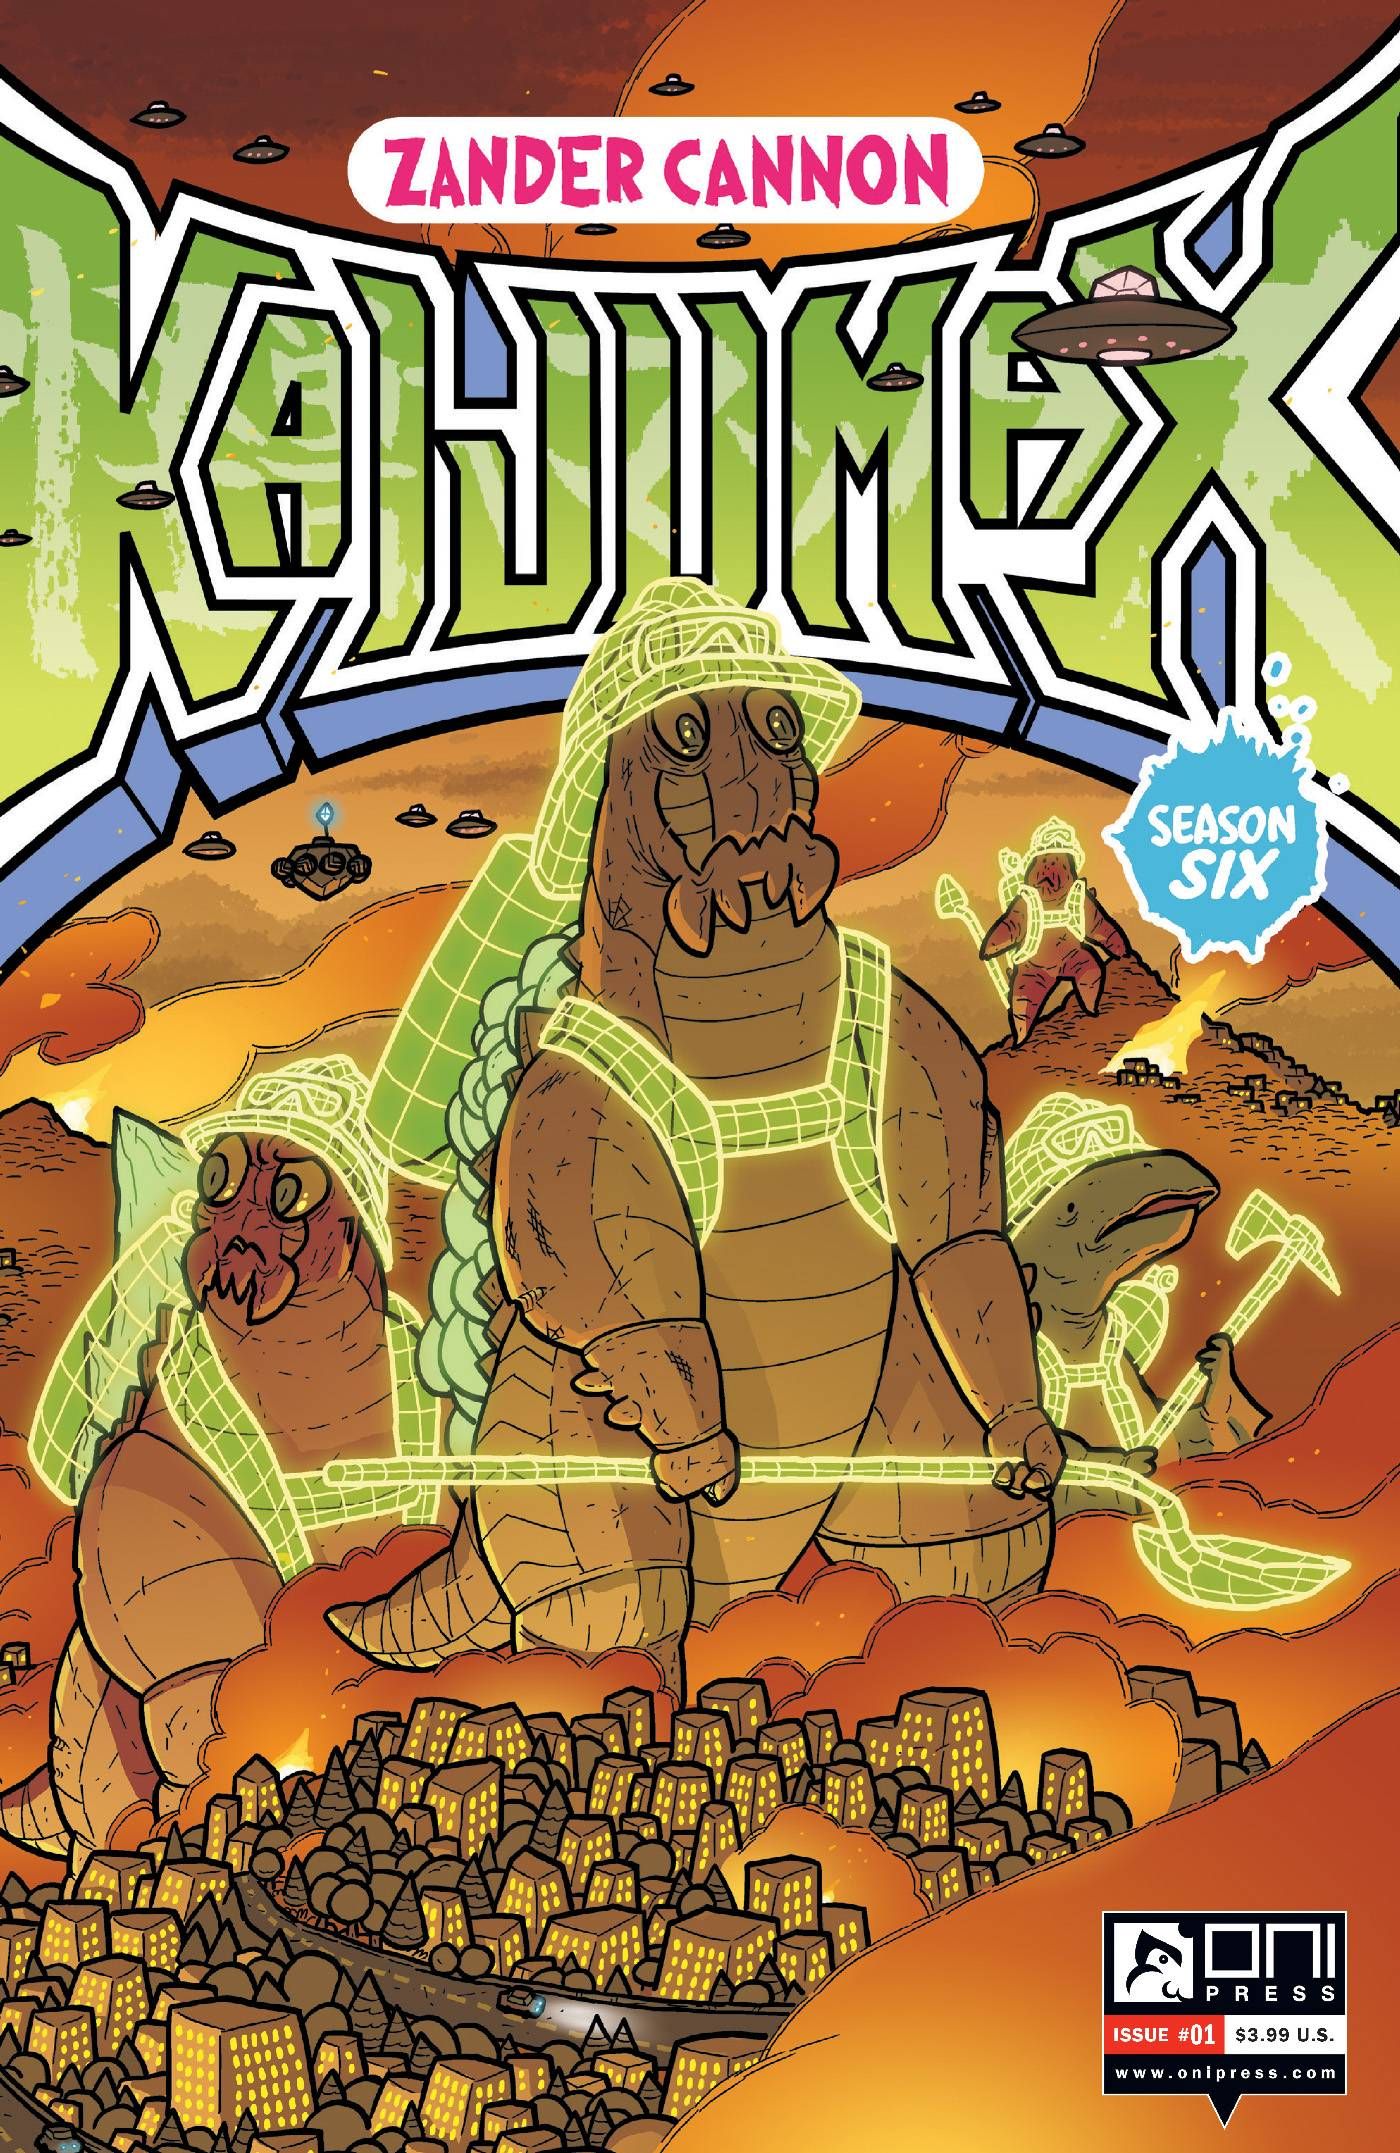 Kaijumax: Season 6 #1 Comic